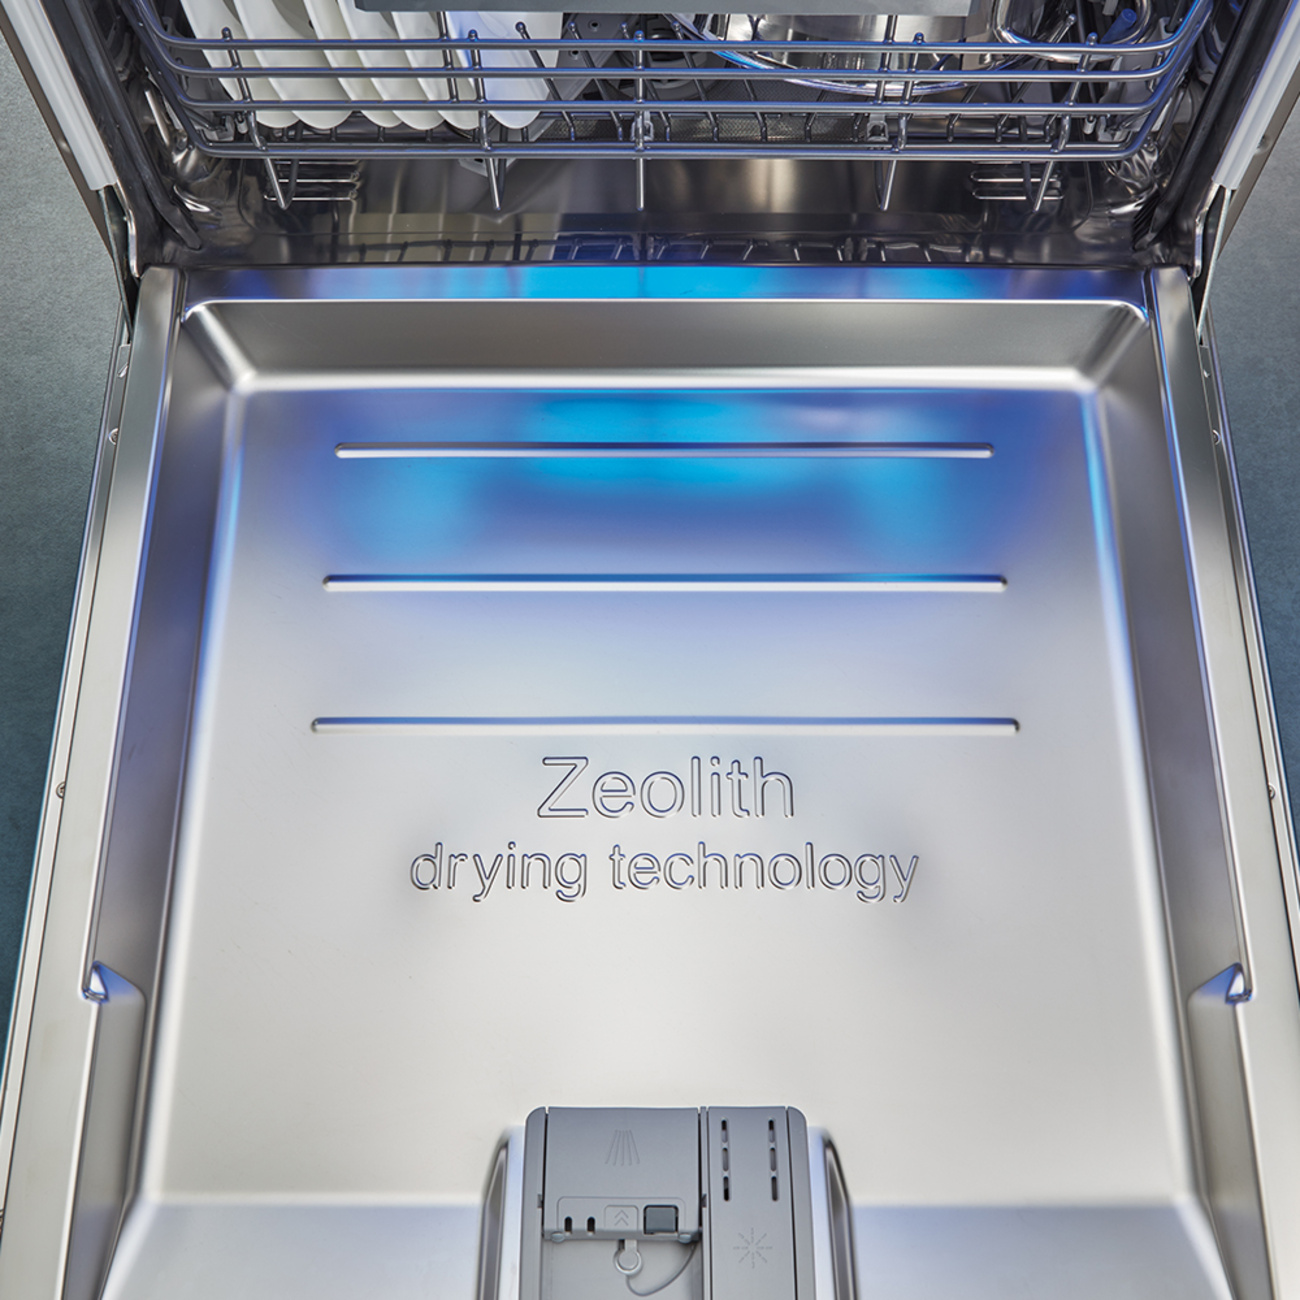 Zeolith Trocknen – Für glänzende Spülergebnisse bei Das Elektroteam Winkler GmbH in Erfurt